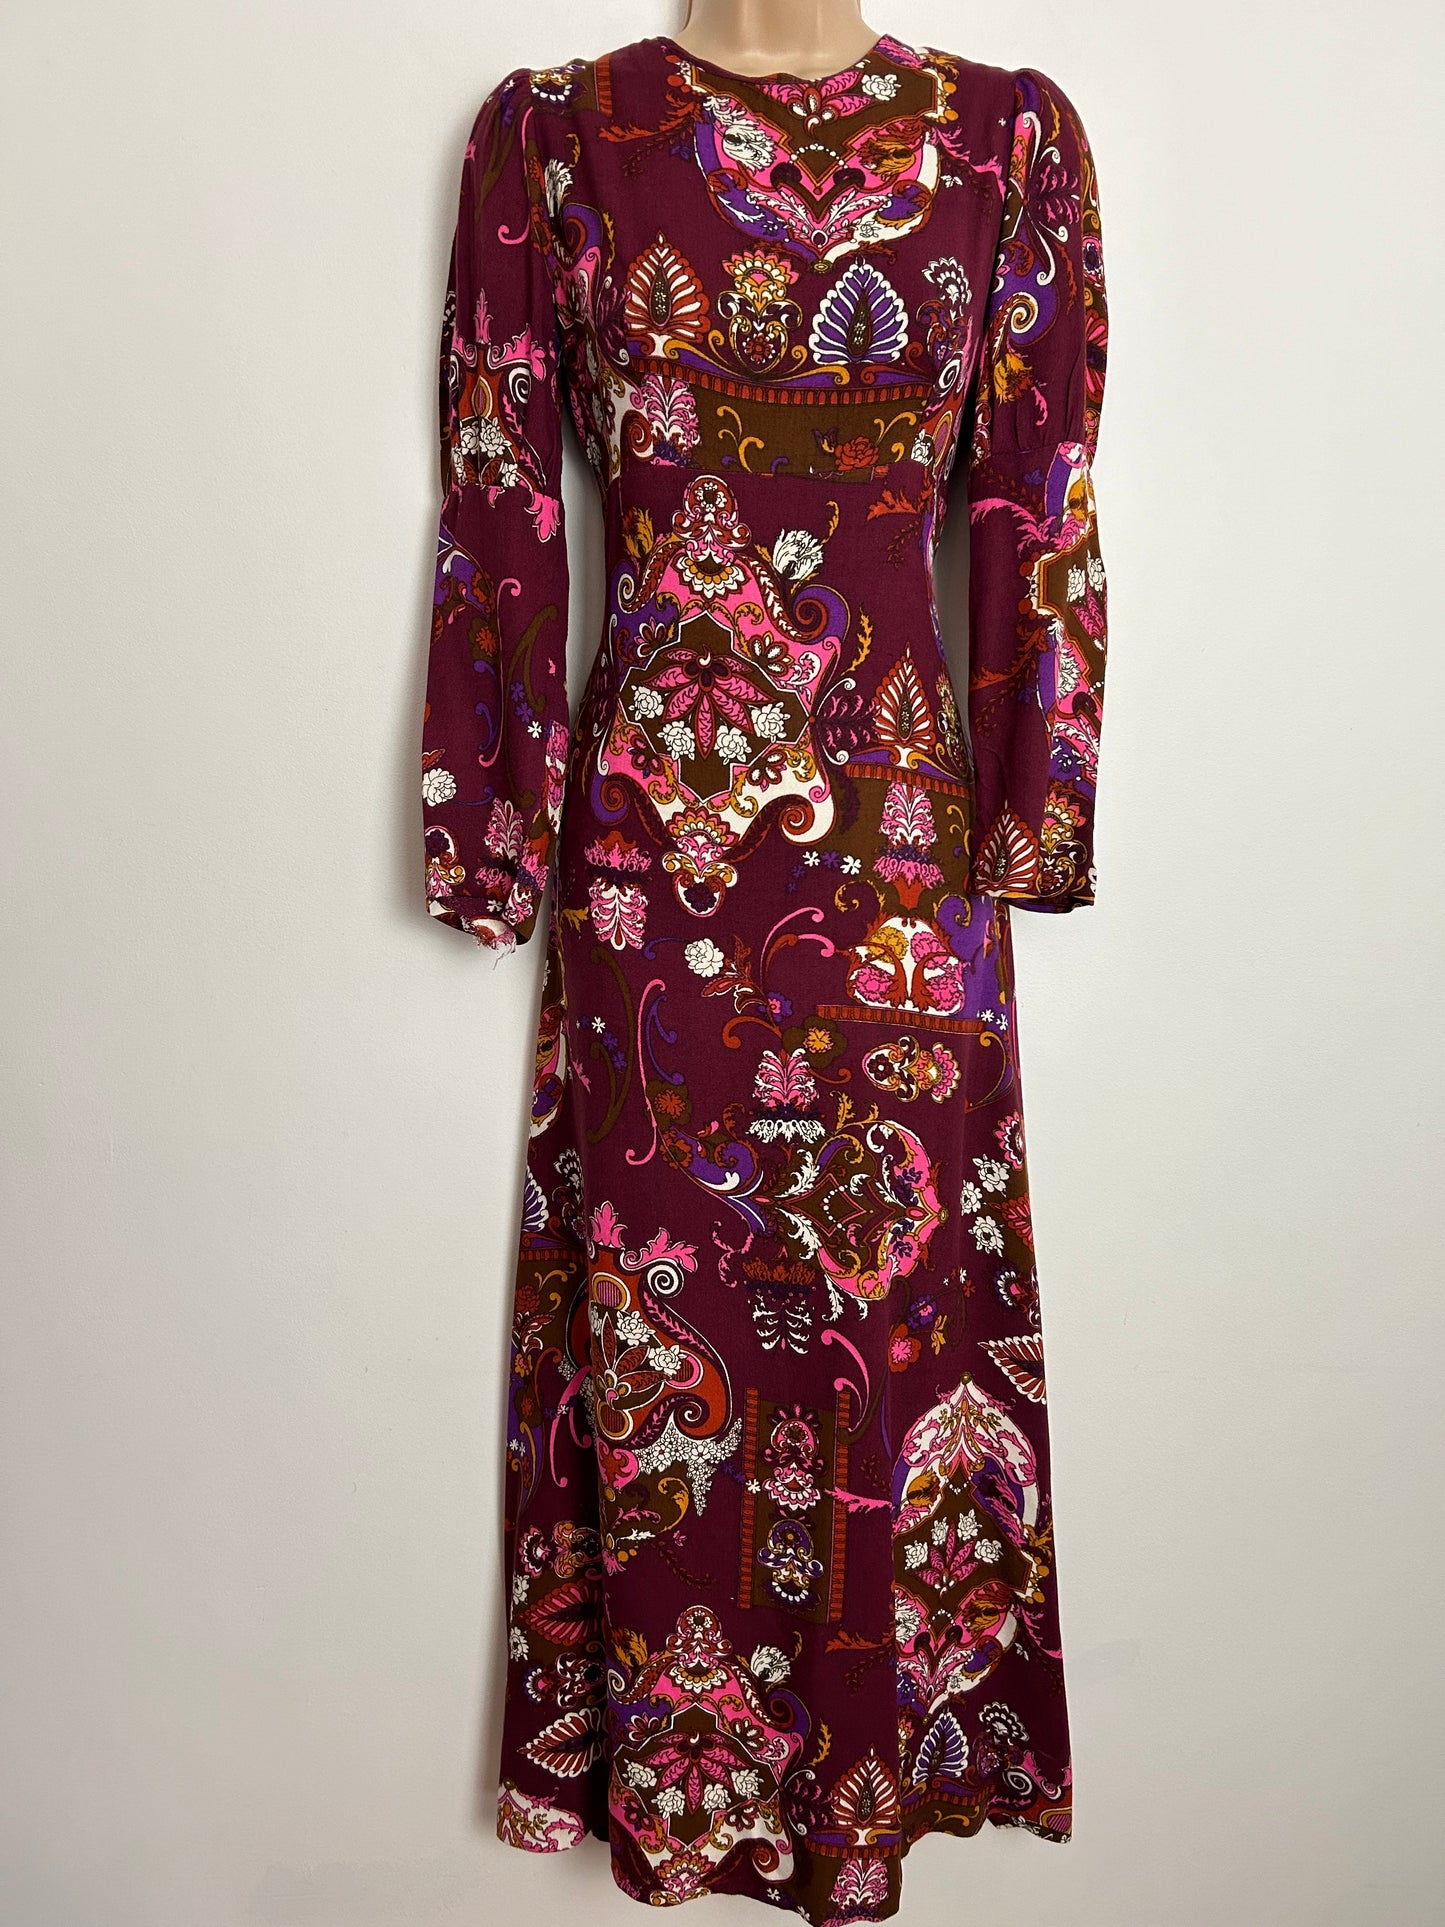 Vintage 1970s UK Size 8 Maroon Pink & Purple Cotton Nouveau Print Long Sleeve Maxi Dress